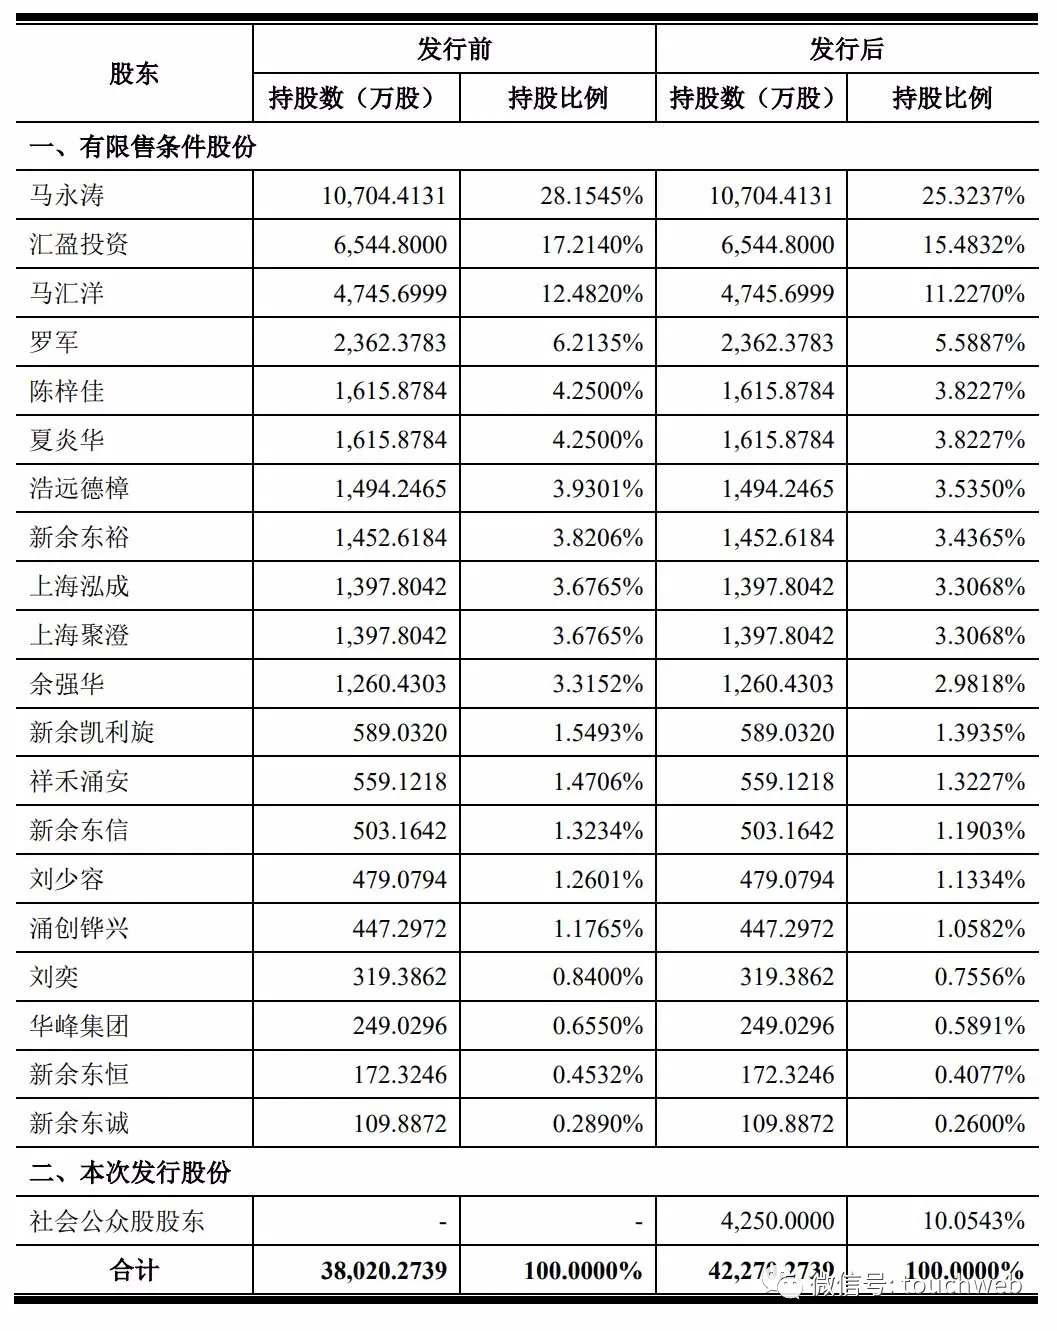 东箭科技深交所上市：市值128亿 年营收下降5.77%